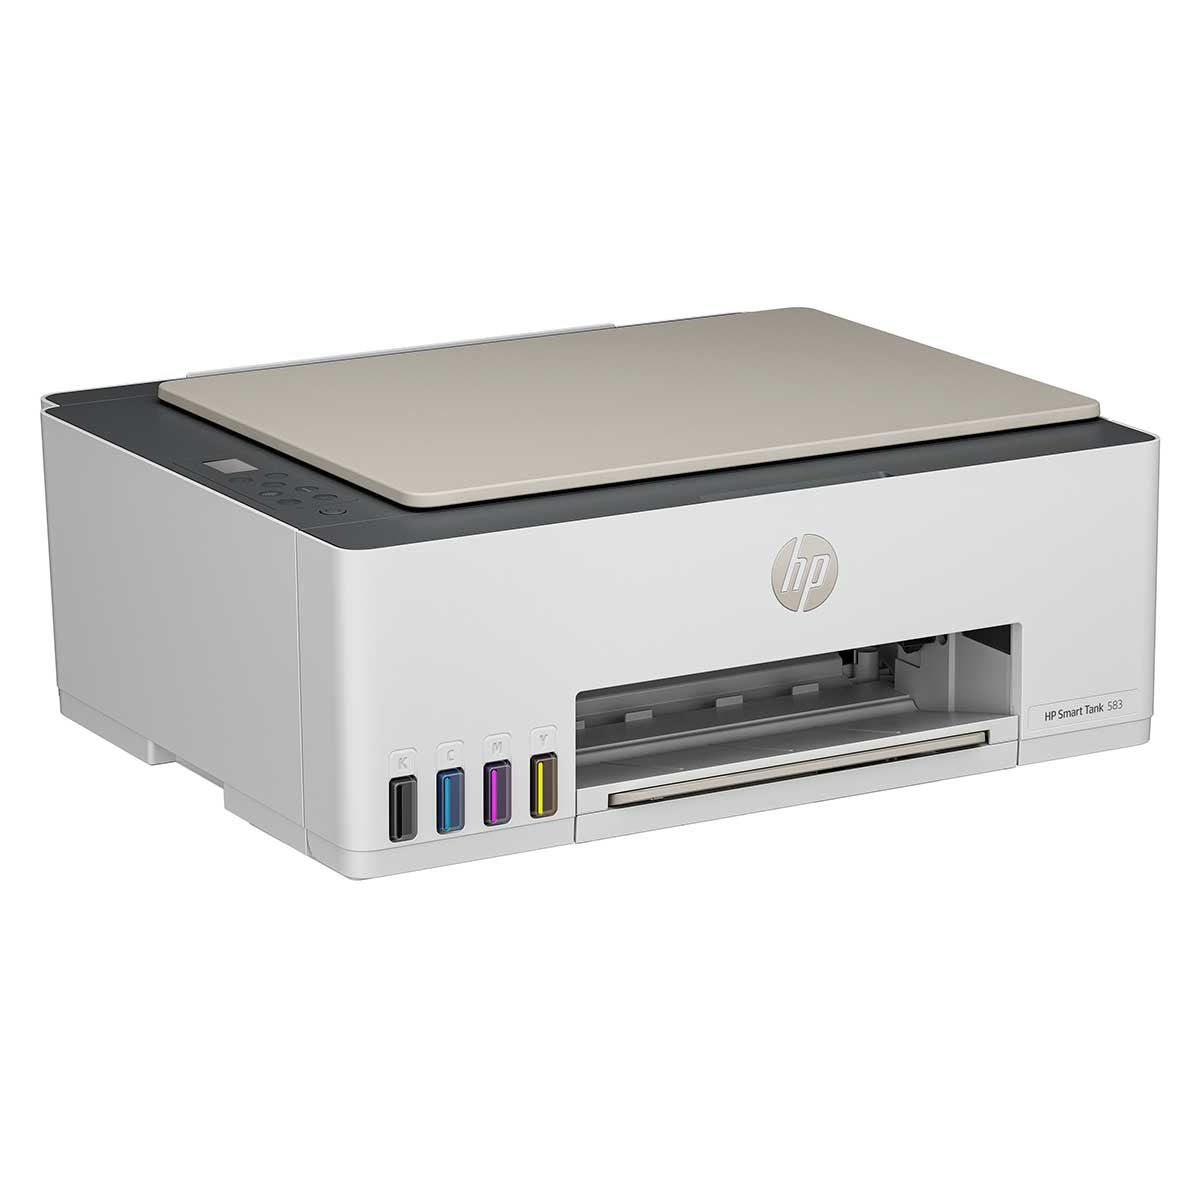 impressora-multifuncional-hp-smart-tank-583-tanque-de-tinta-colorida-wi-fi-bivolt-4.jpg